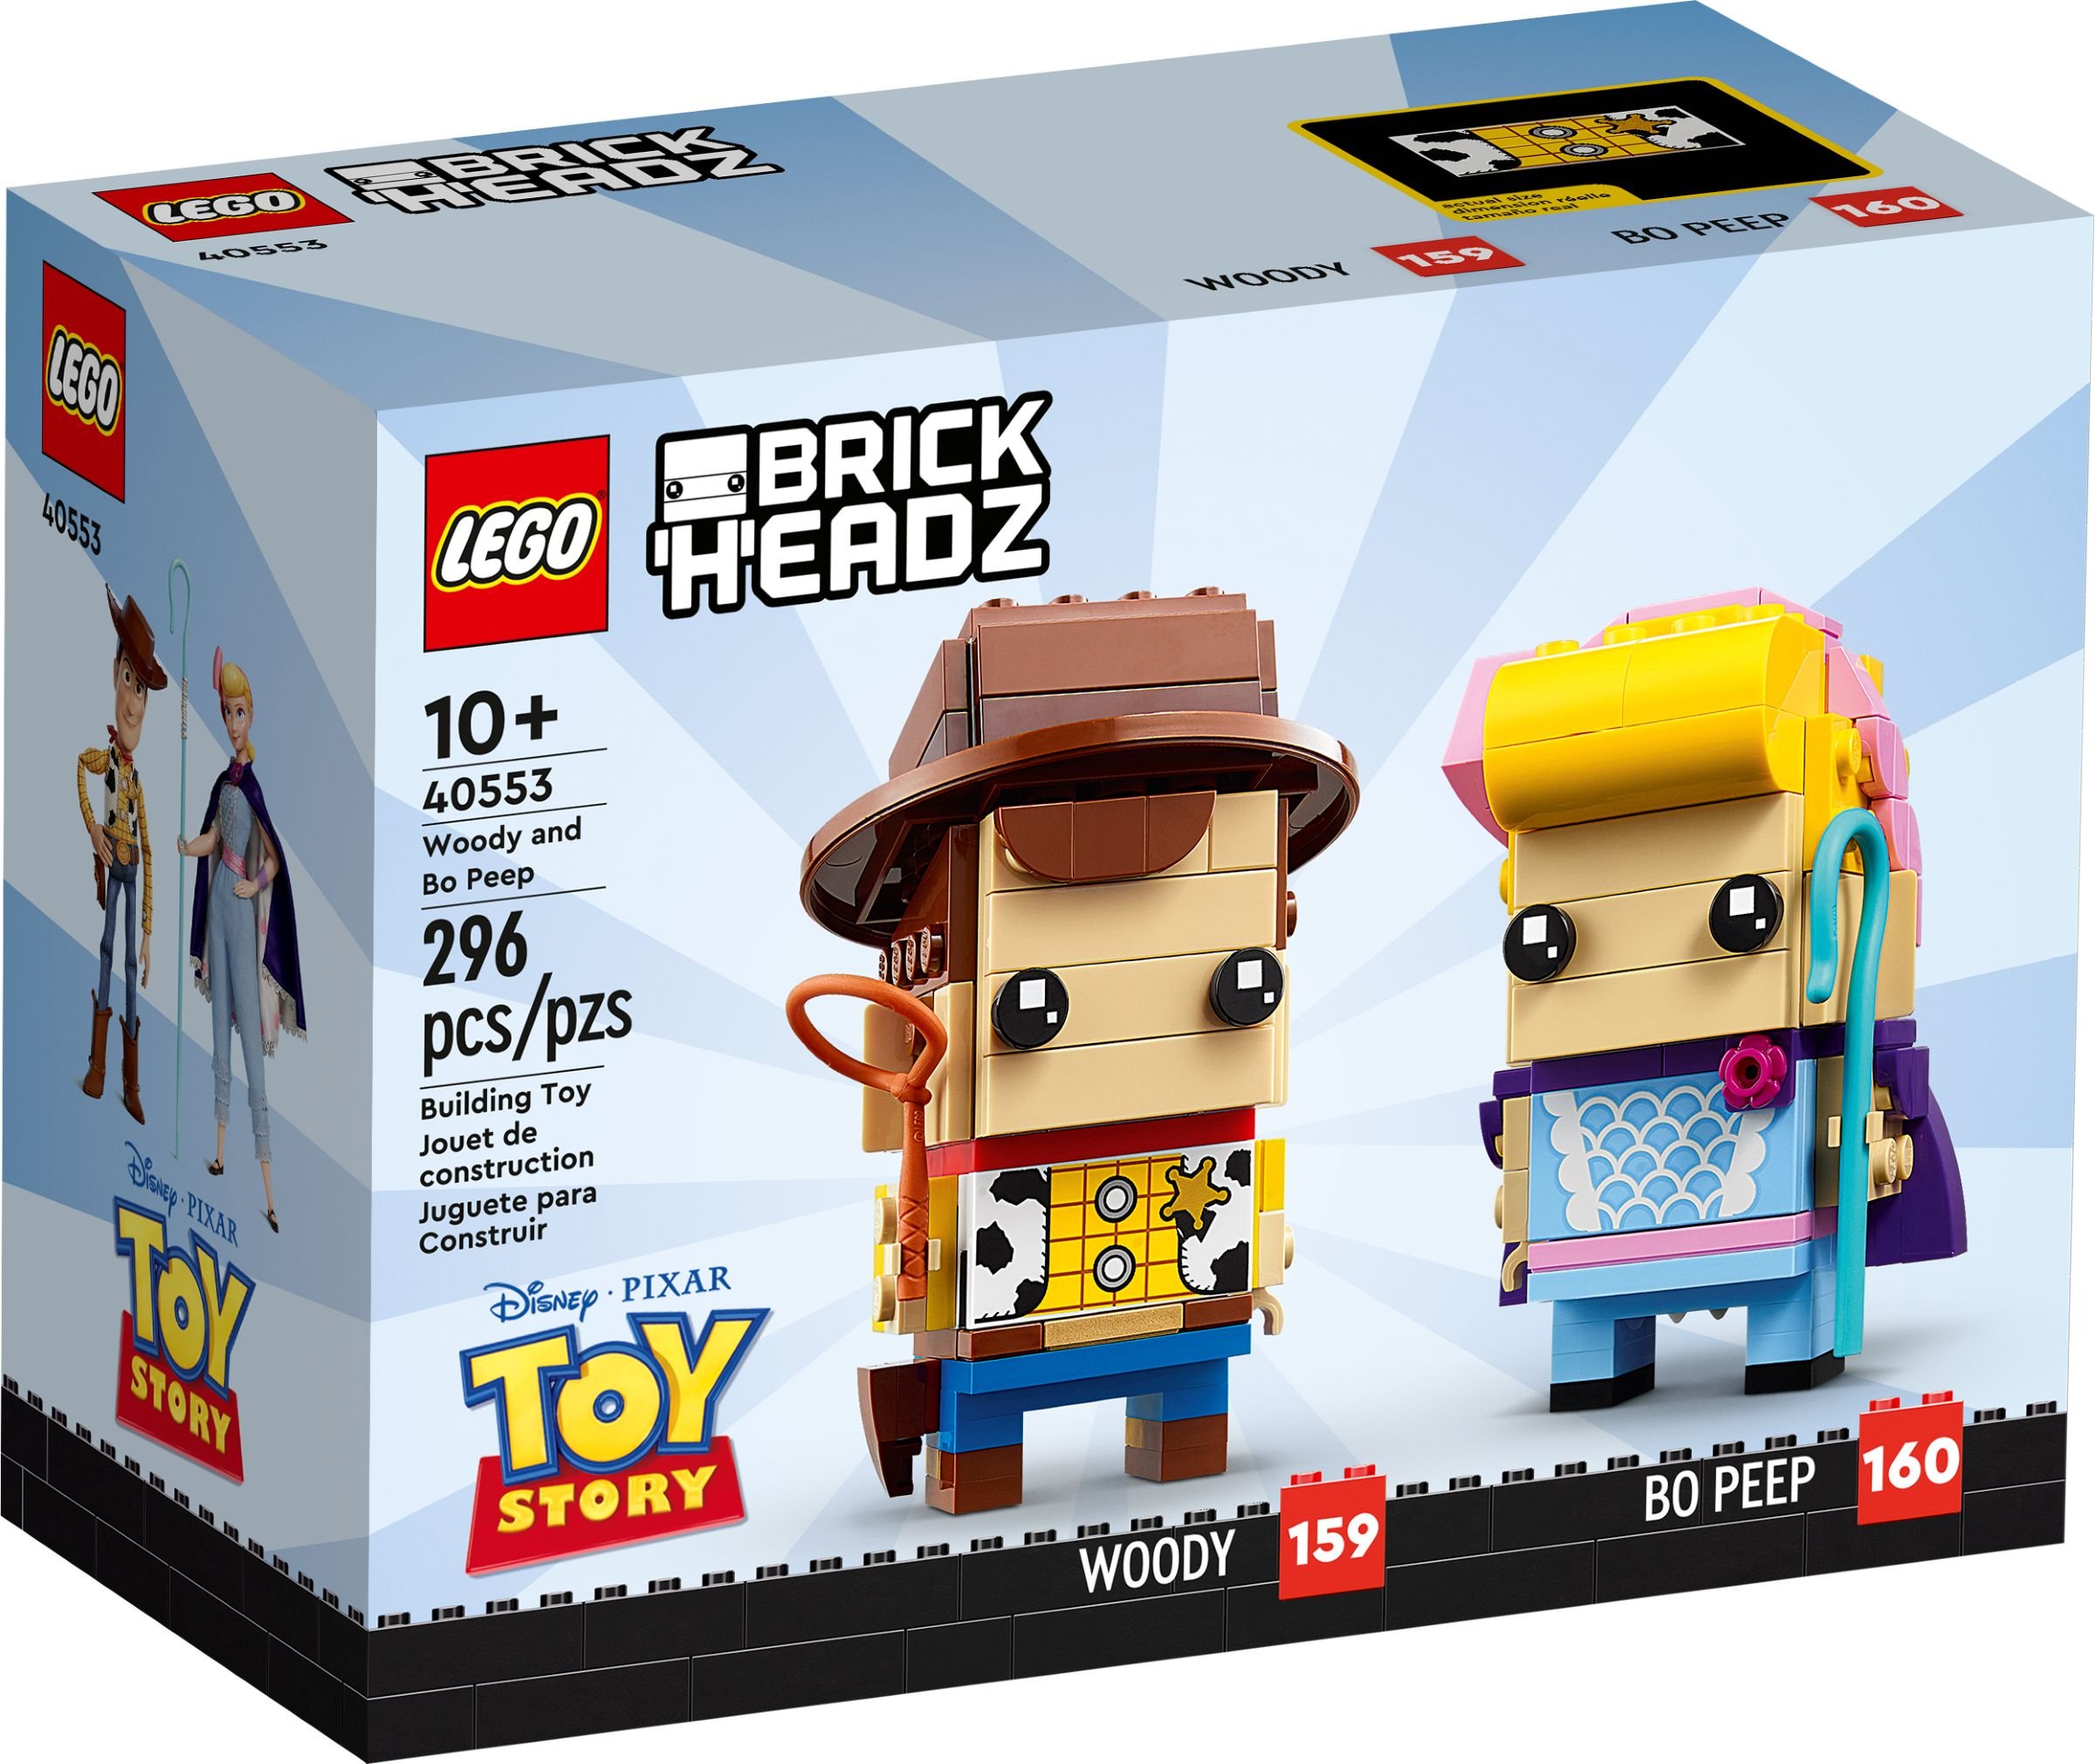 LEGO BrickHeadz 40553 Woody & Bo Peep LEGO_40553_alt1.jpg